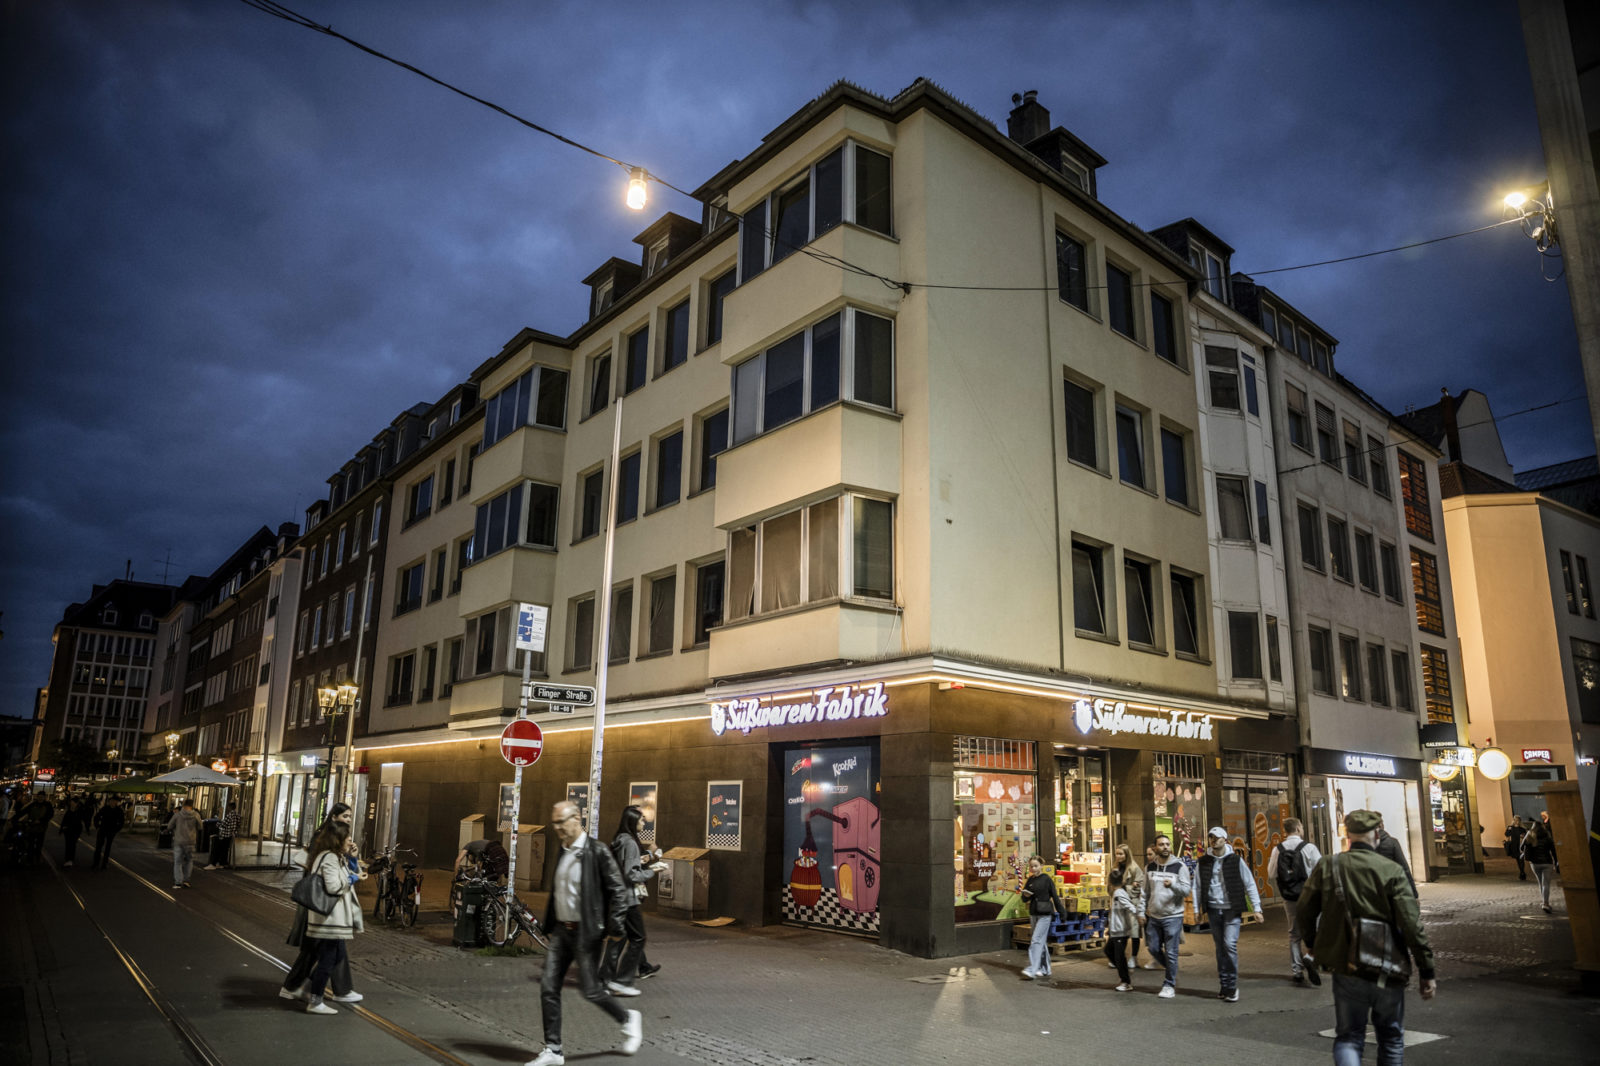 Leerstand an Wohnungen in der Düsseldorfer Altstadt